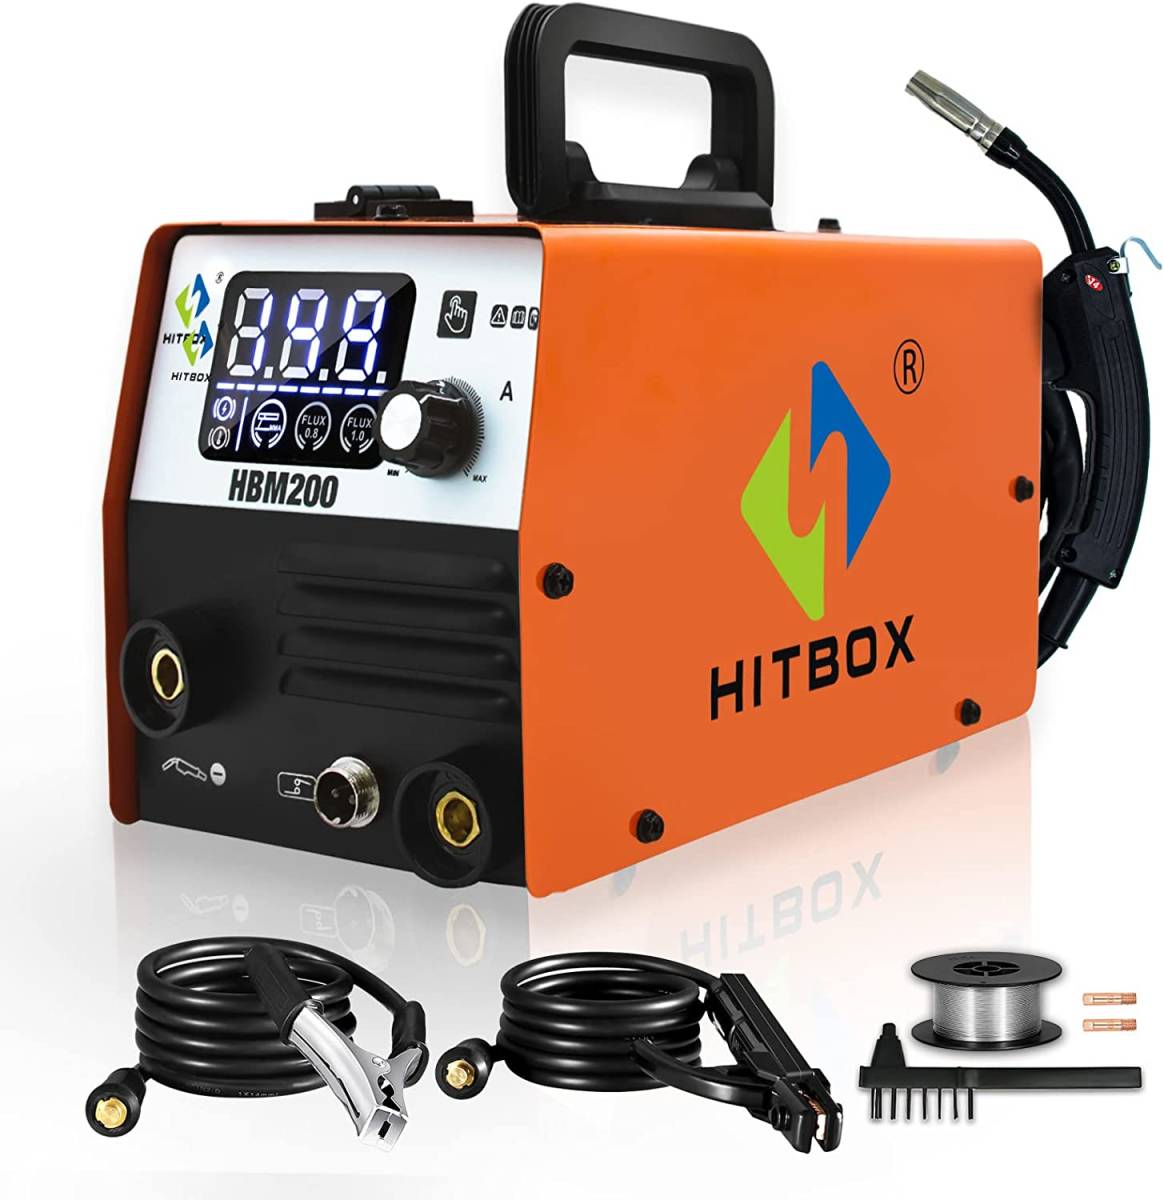 【新品】HITBOX 半自動溶接機 HBM200 100V 200A ノンガス MIG溶接 アーク溶接 手棒溶接 MAG ARC 2in1タイプ 小型軽量 日本語取説